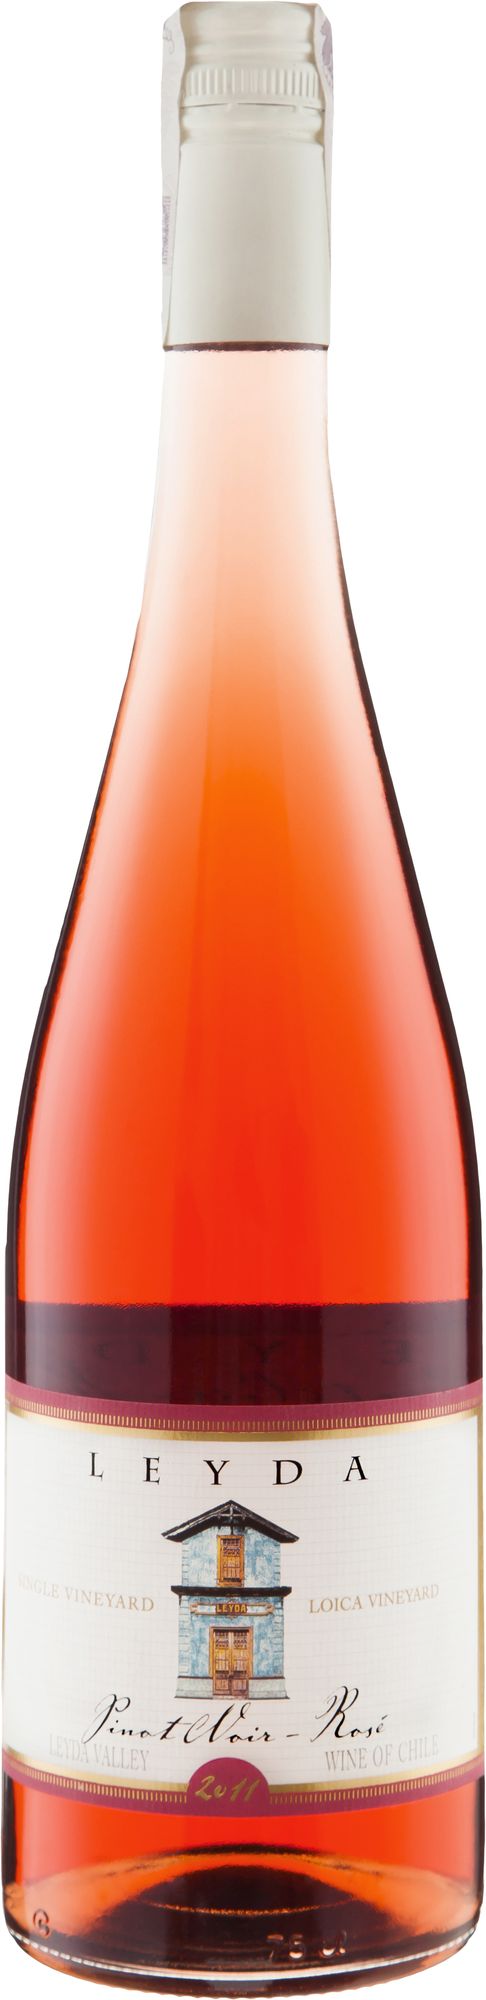 Wino Leyda Pinot Noir Rosé S.V. Loica Leyda Valley